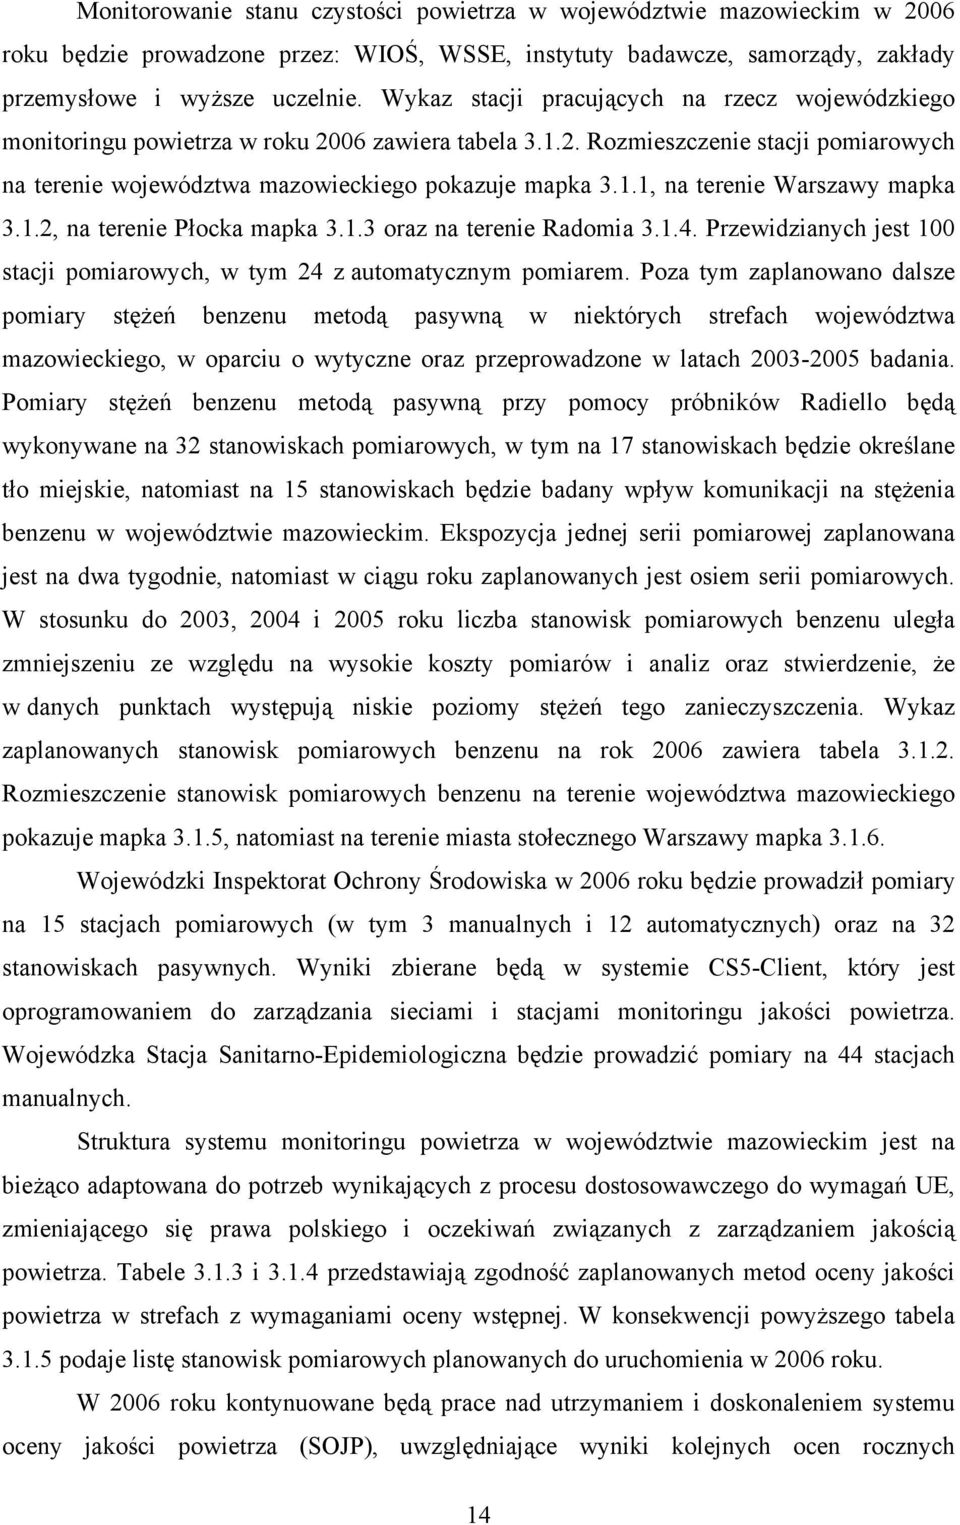 1.2, na terenie Płocka mapka 3.1.3 oraz na terenie Radomia 3.1.4. Przewidzianych jest 100 stacji pomiarowych, w tym 24 z automatycznym pomiarem.